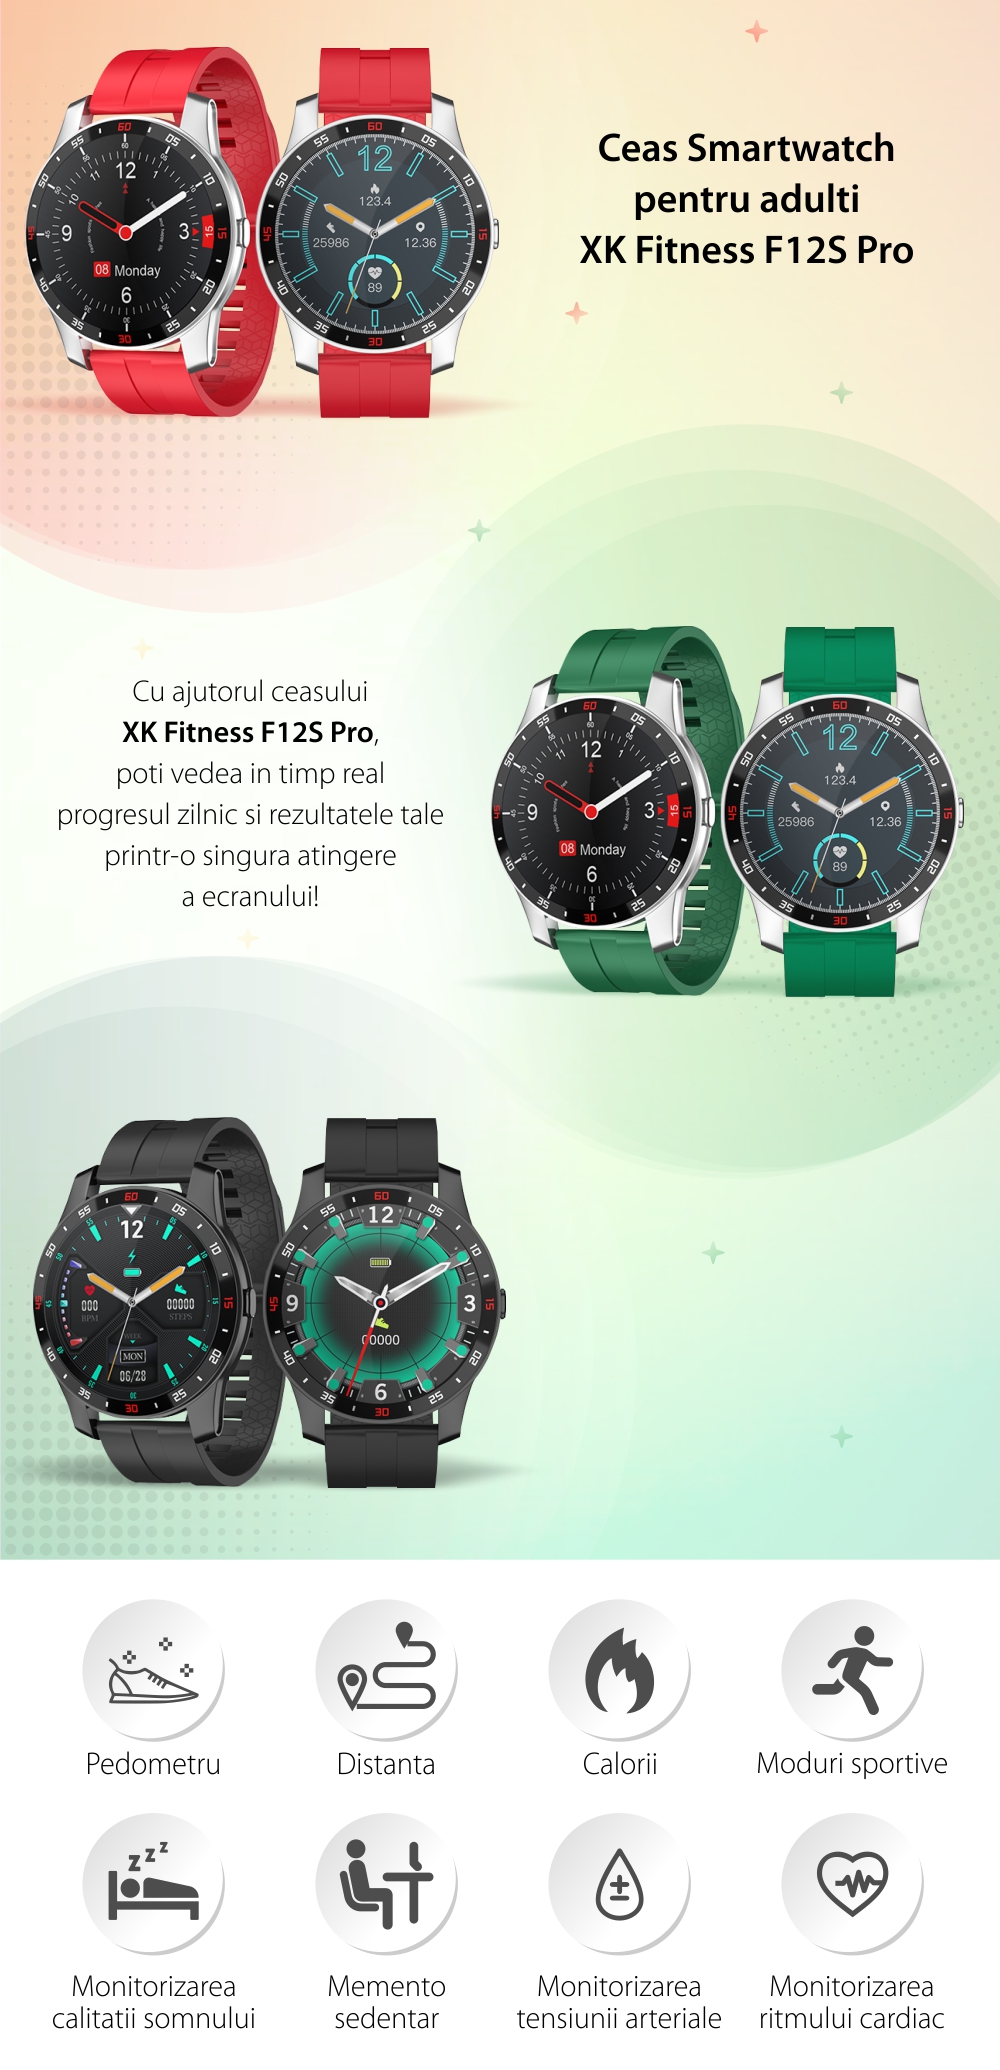 Ceas Smartwatch XK Fitness F12S Pro cu Monitorizare Automata Puls, Tensiune, Oxigen, Somn, Memento sedentar, Moduri sportive, Calorii, Negru